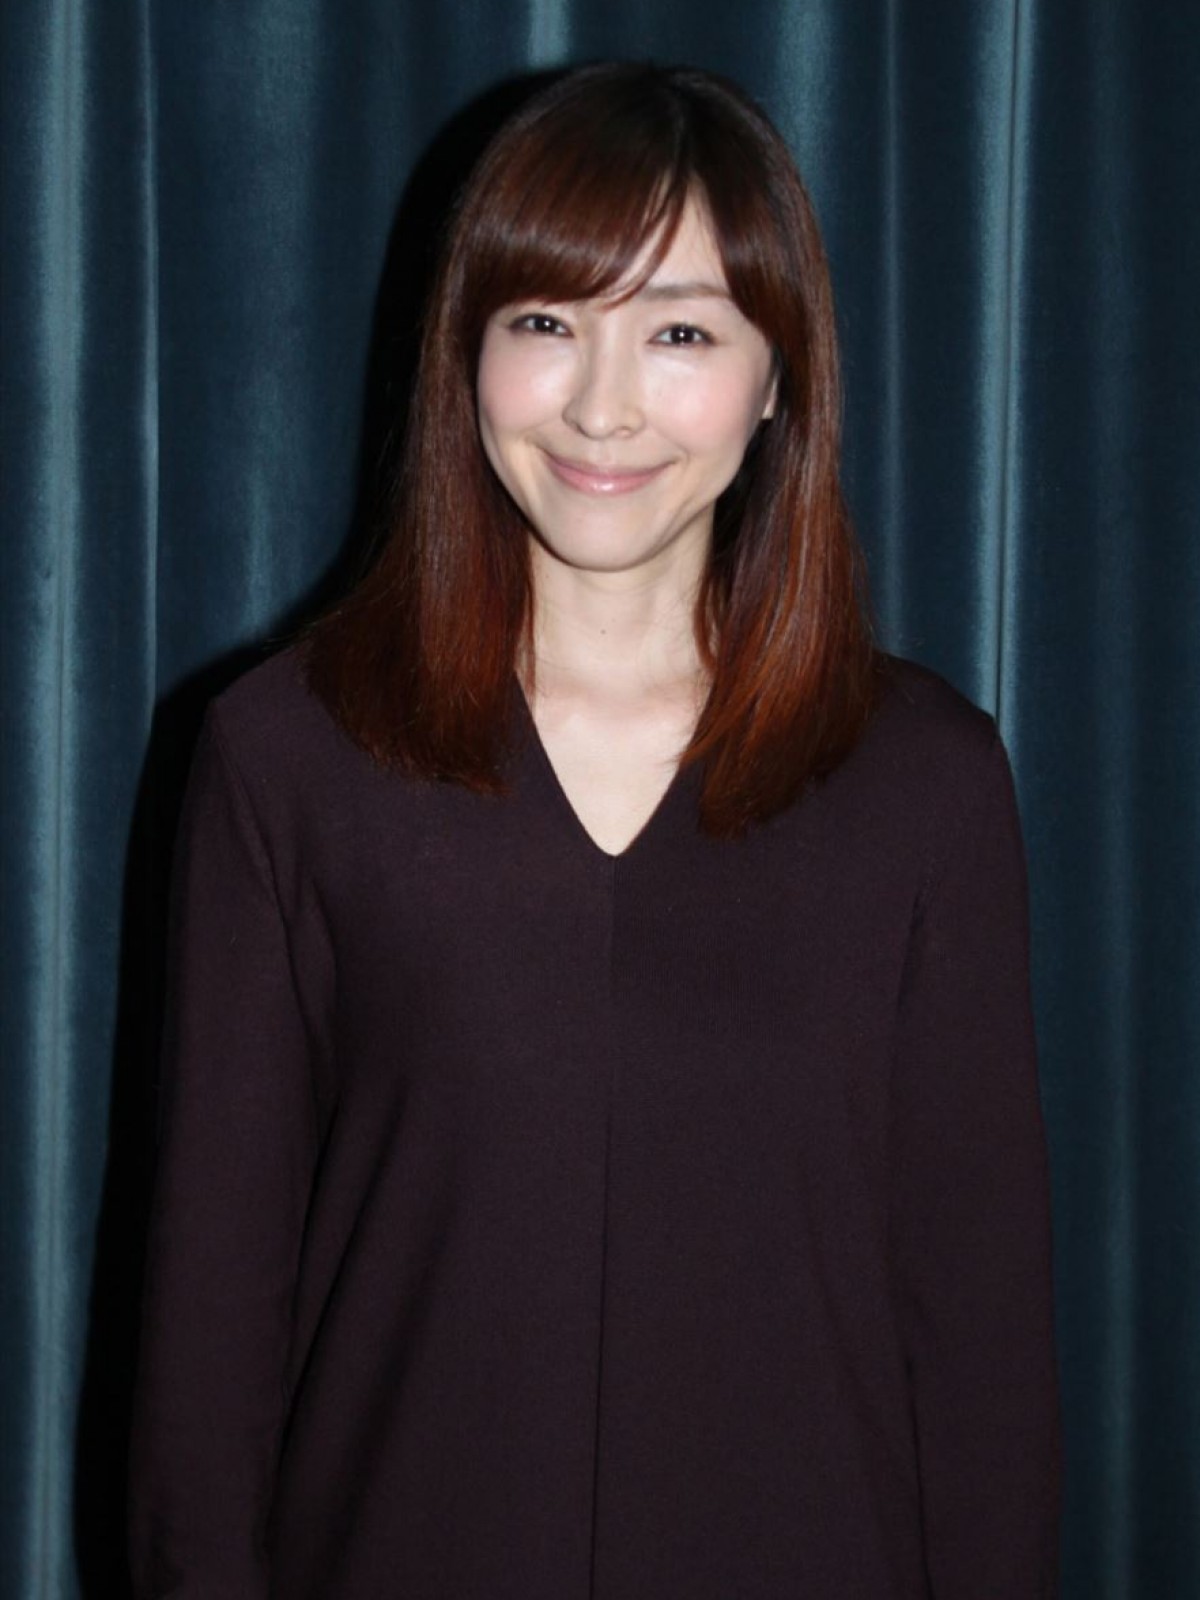 峯田和伸、麻生久美子は「全然変わってない」13年ぶり共演を語る